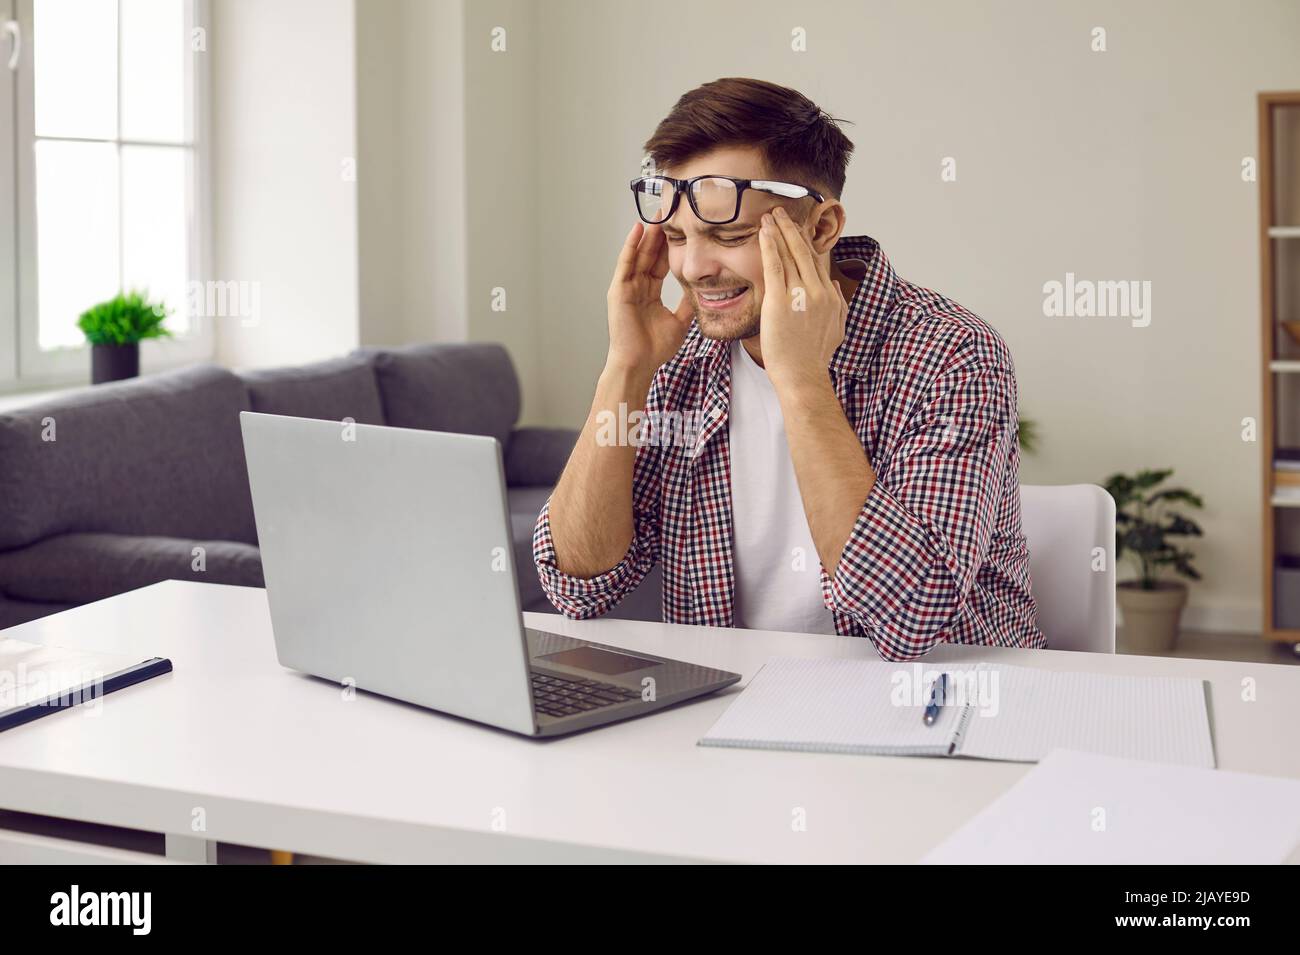 Homme fatigué stressé travaillant sur ordinateur portable, souffrant de maux de tête et de frottement de ses temples Banque D'Images